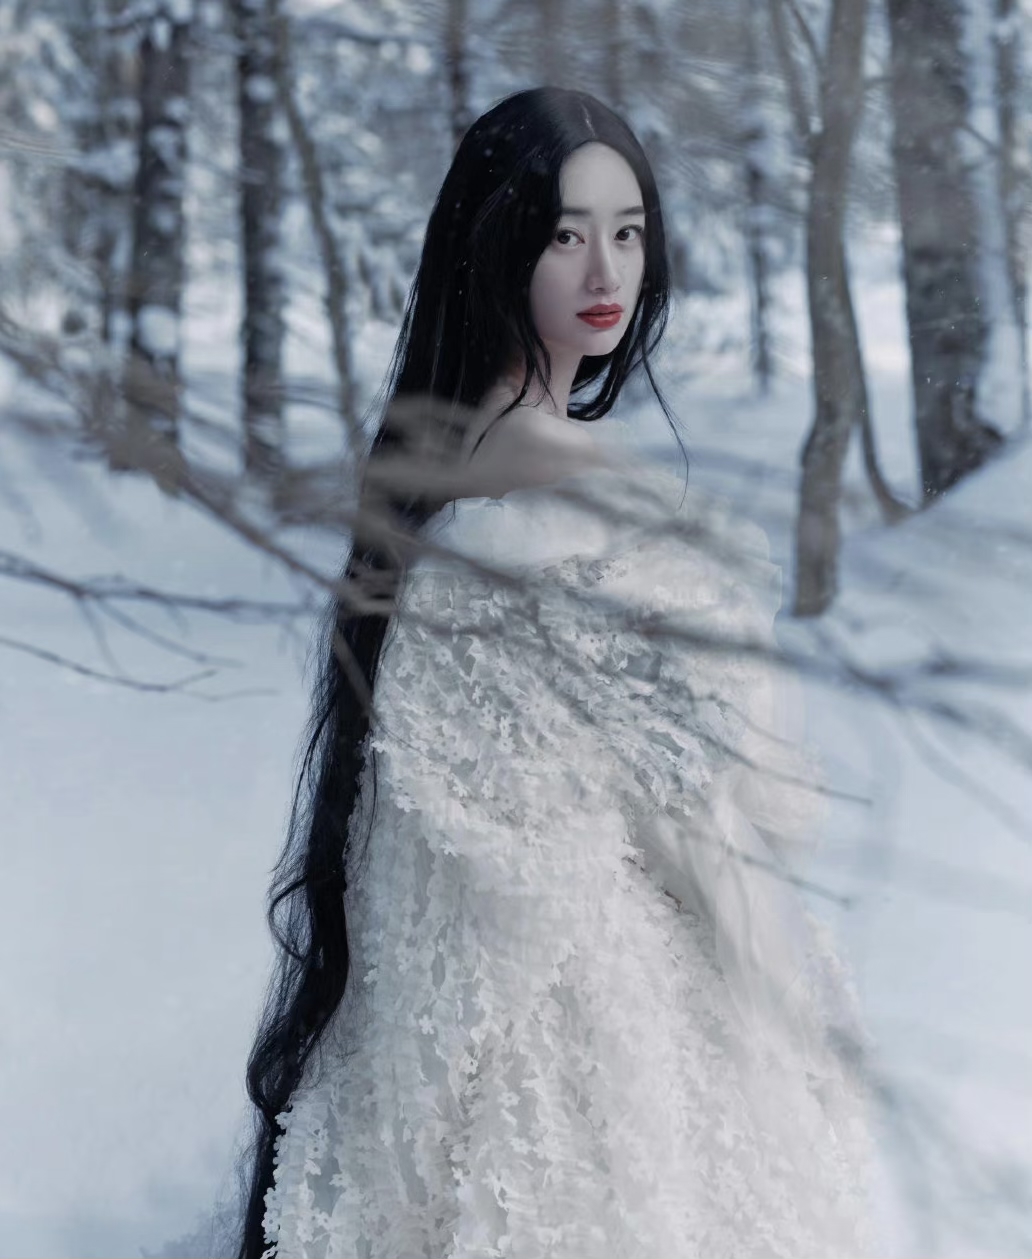 郭晓婷白衣长发,如雪女一般美得不可方物